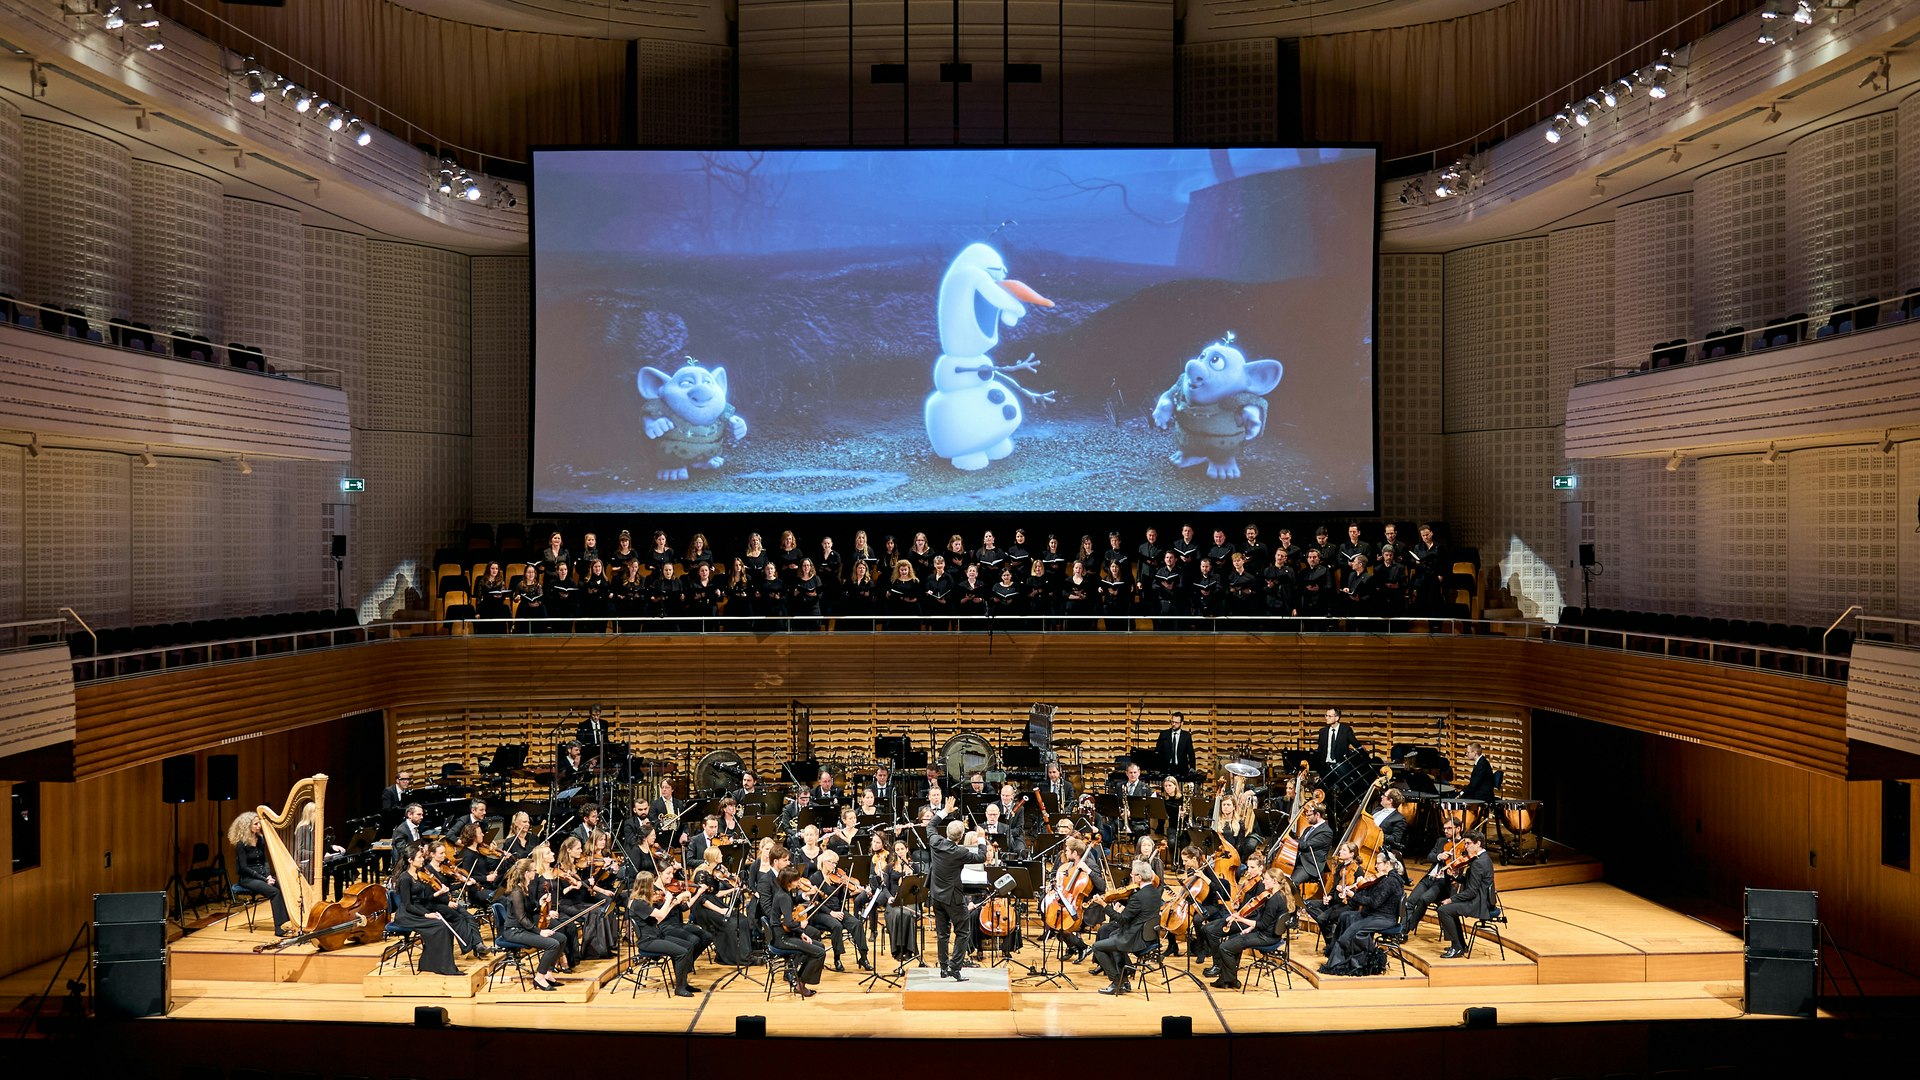 Frozen in Concert im Konzertsaal des KKL Luzern mit dem 21st Century Orchestra & Chorus.